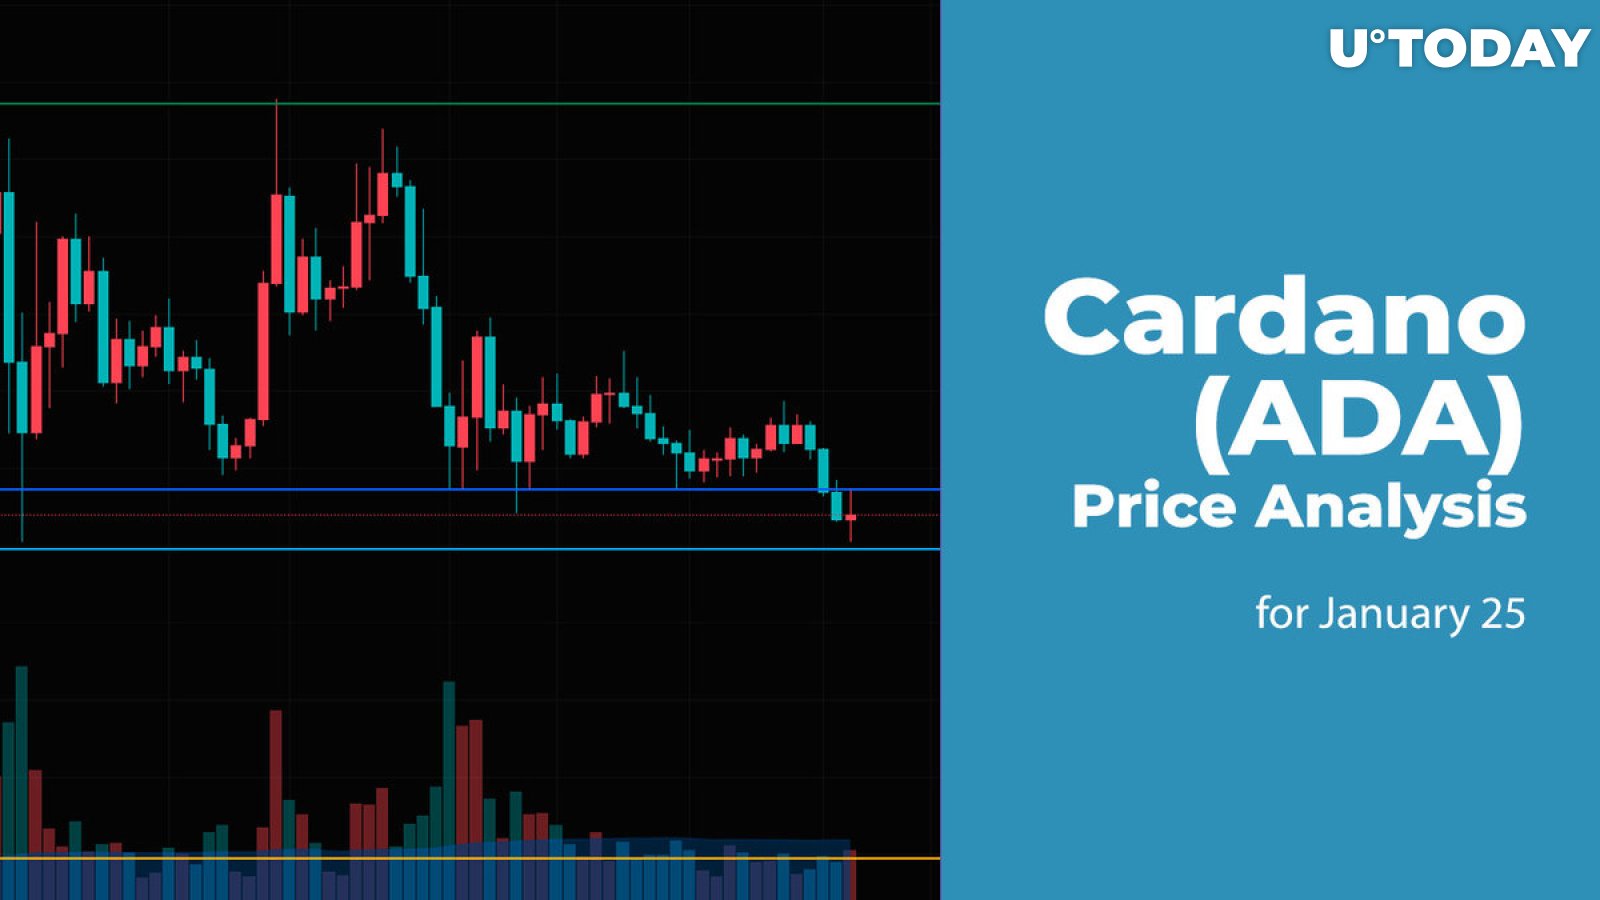 Cardano (ADA) Price Analysis for January 25